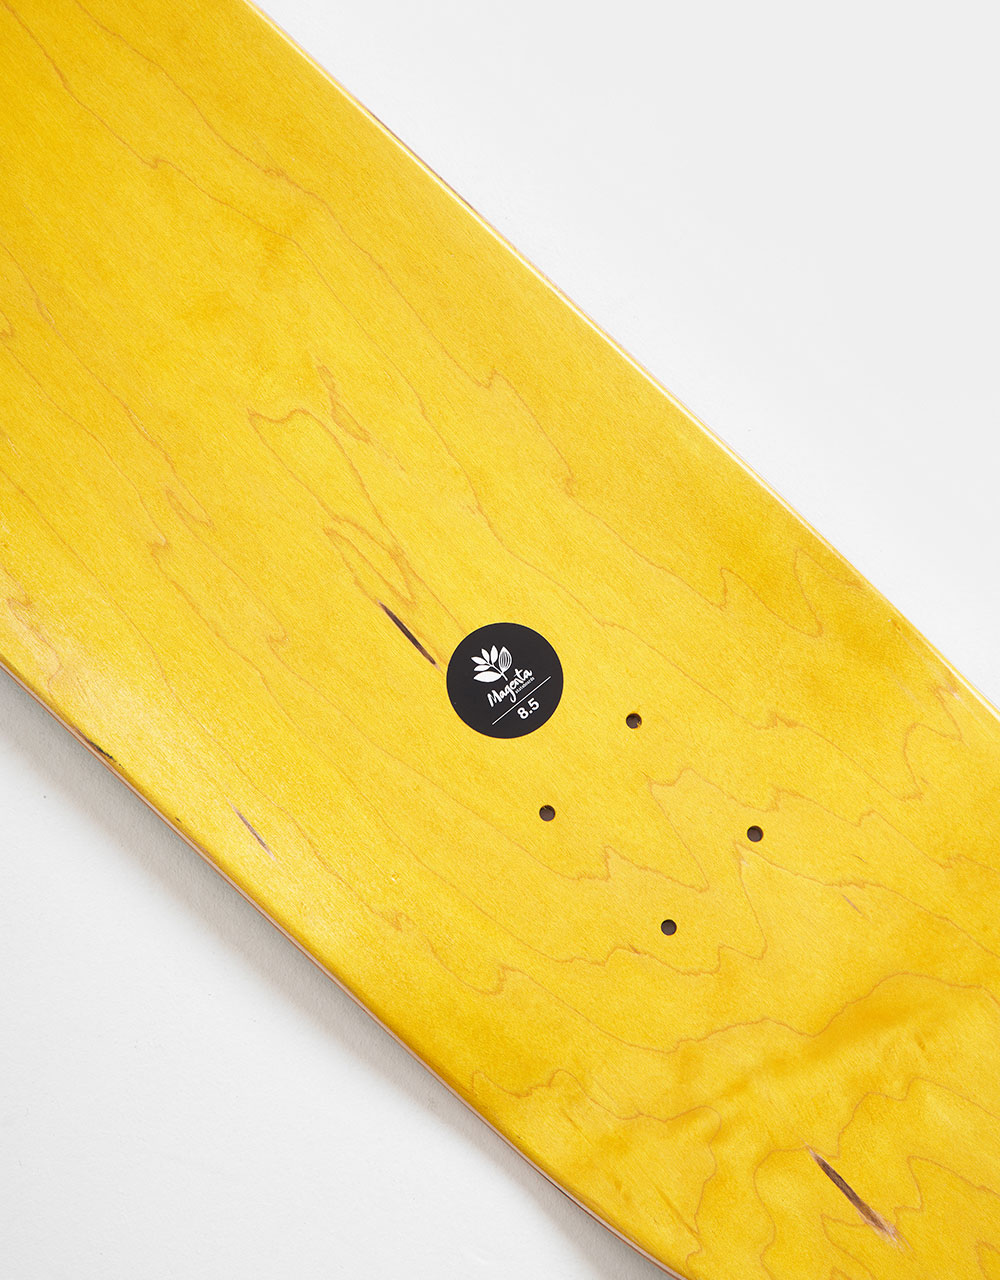 Magenta Casey & Jameel Door Skateboard Deck - 8.5"